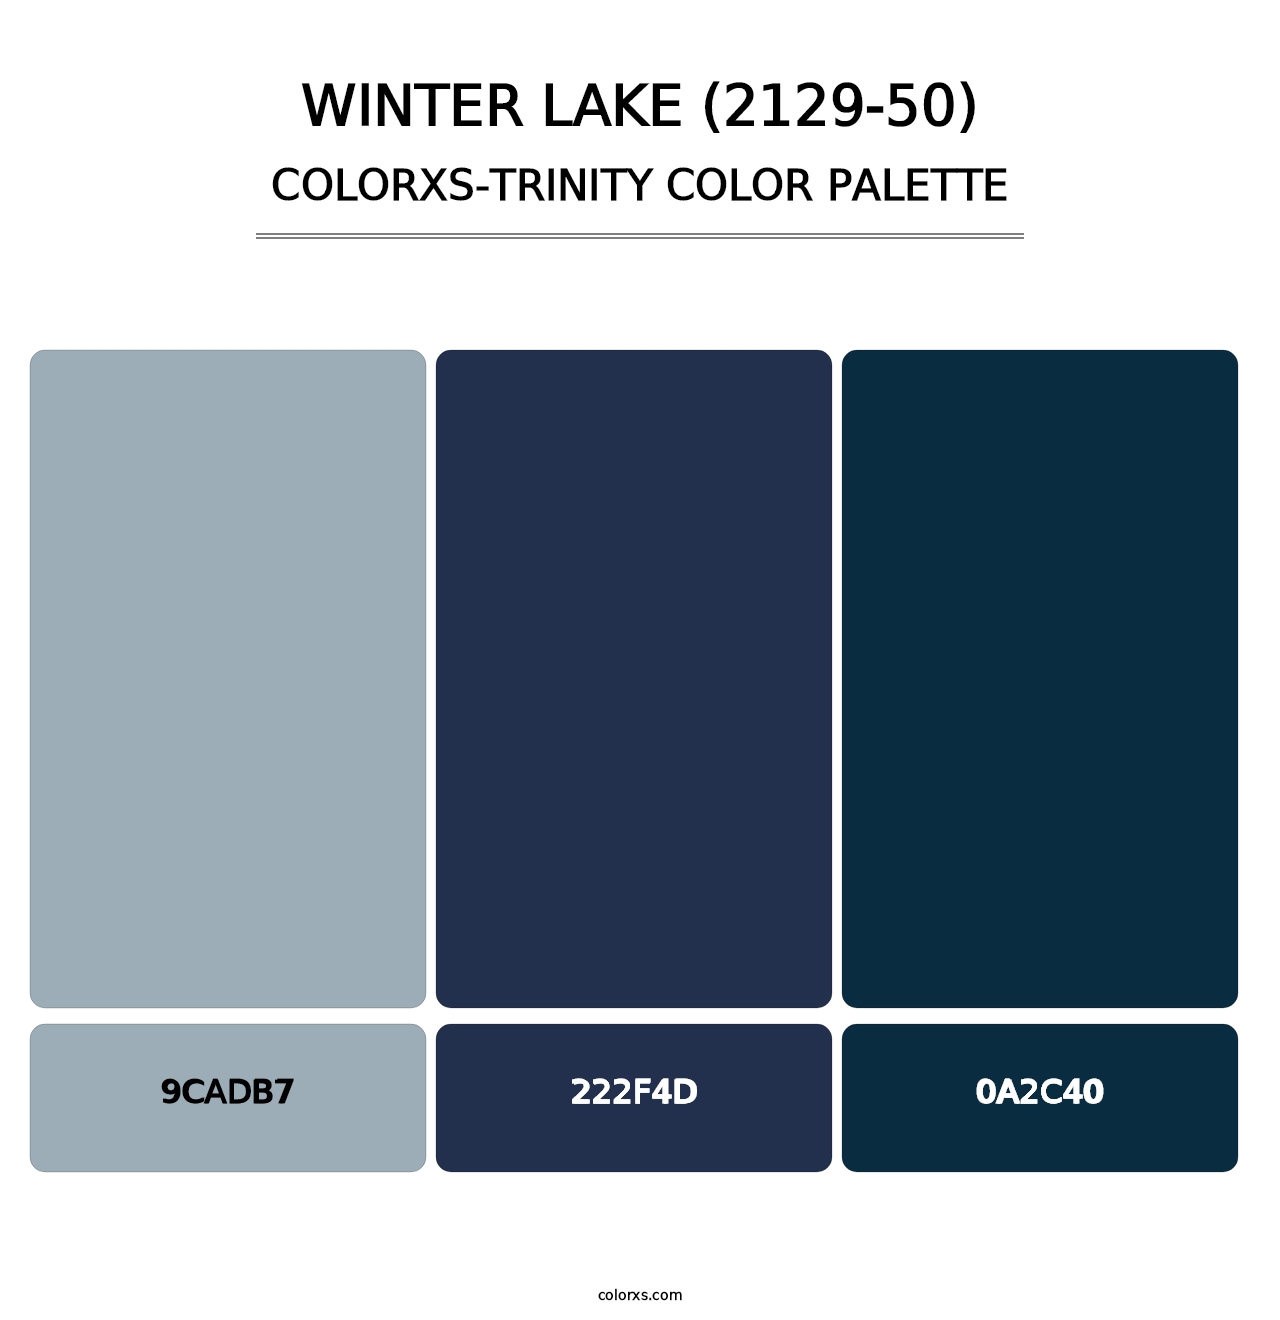 Winter Lake (2129-50) - Colorxs Trinity Palette